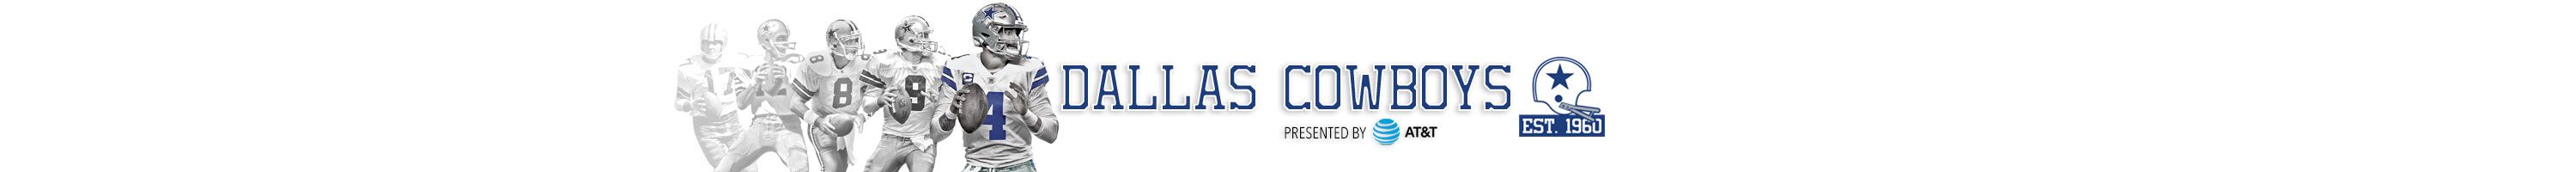 Dallas Cowboys Official Site Of The Dallas Cowboys